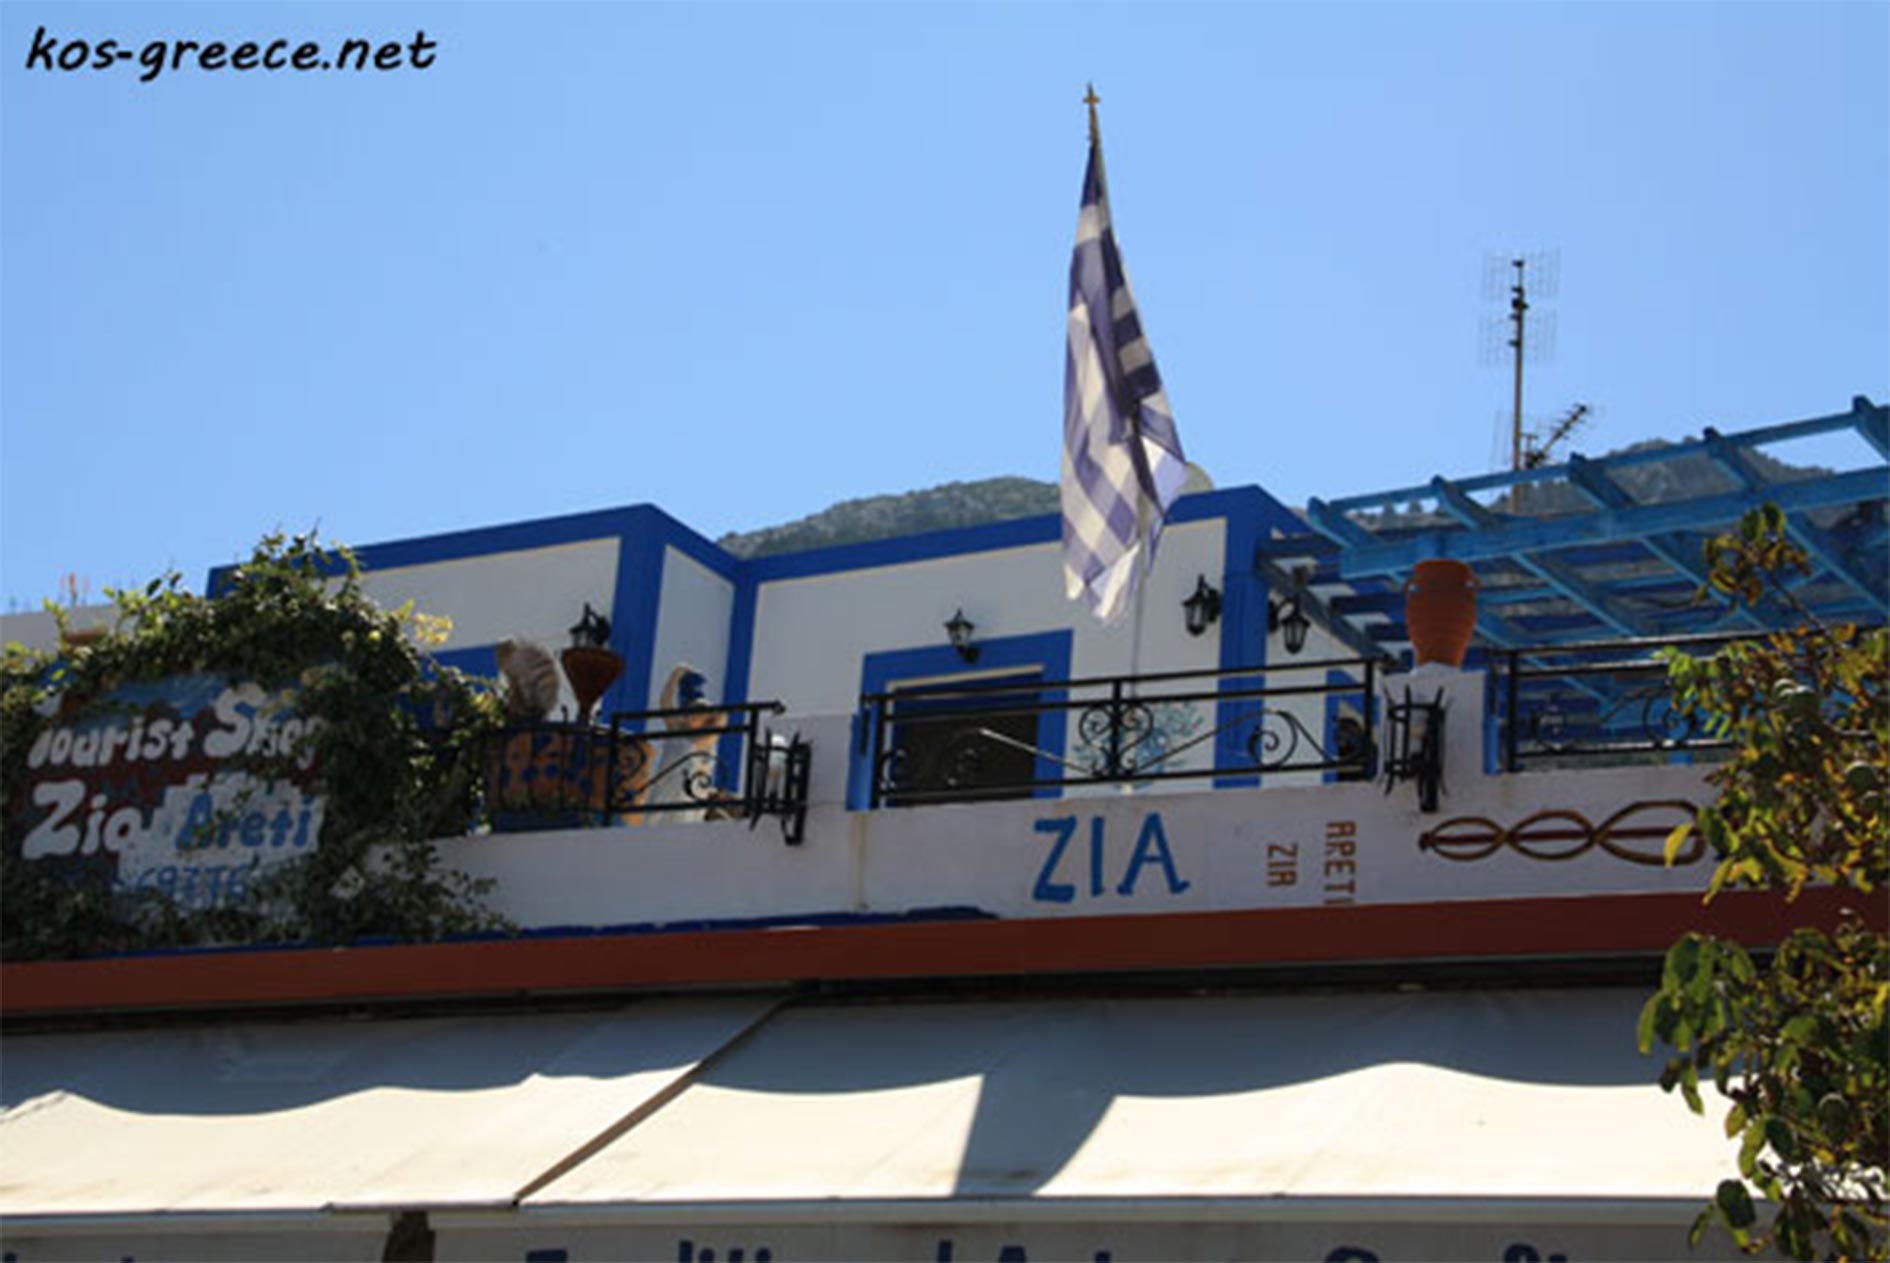 Zia village